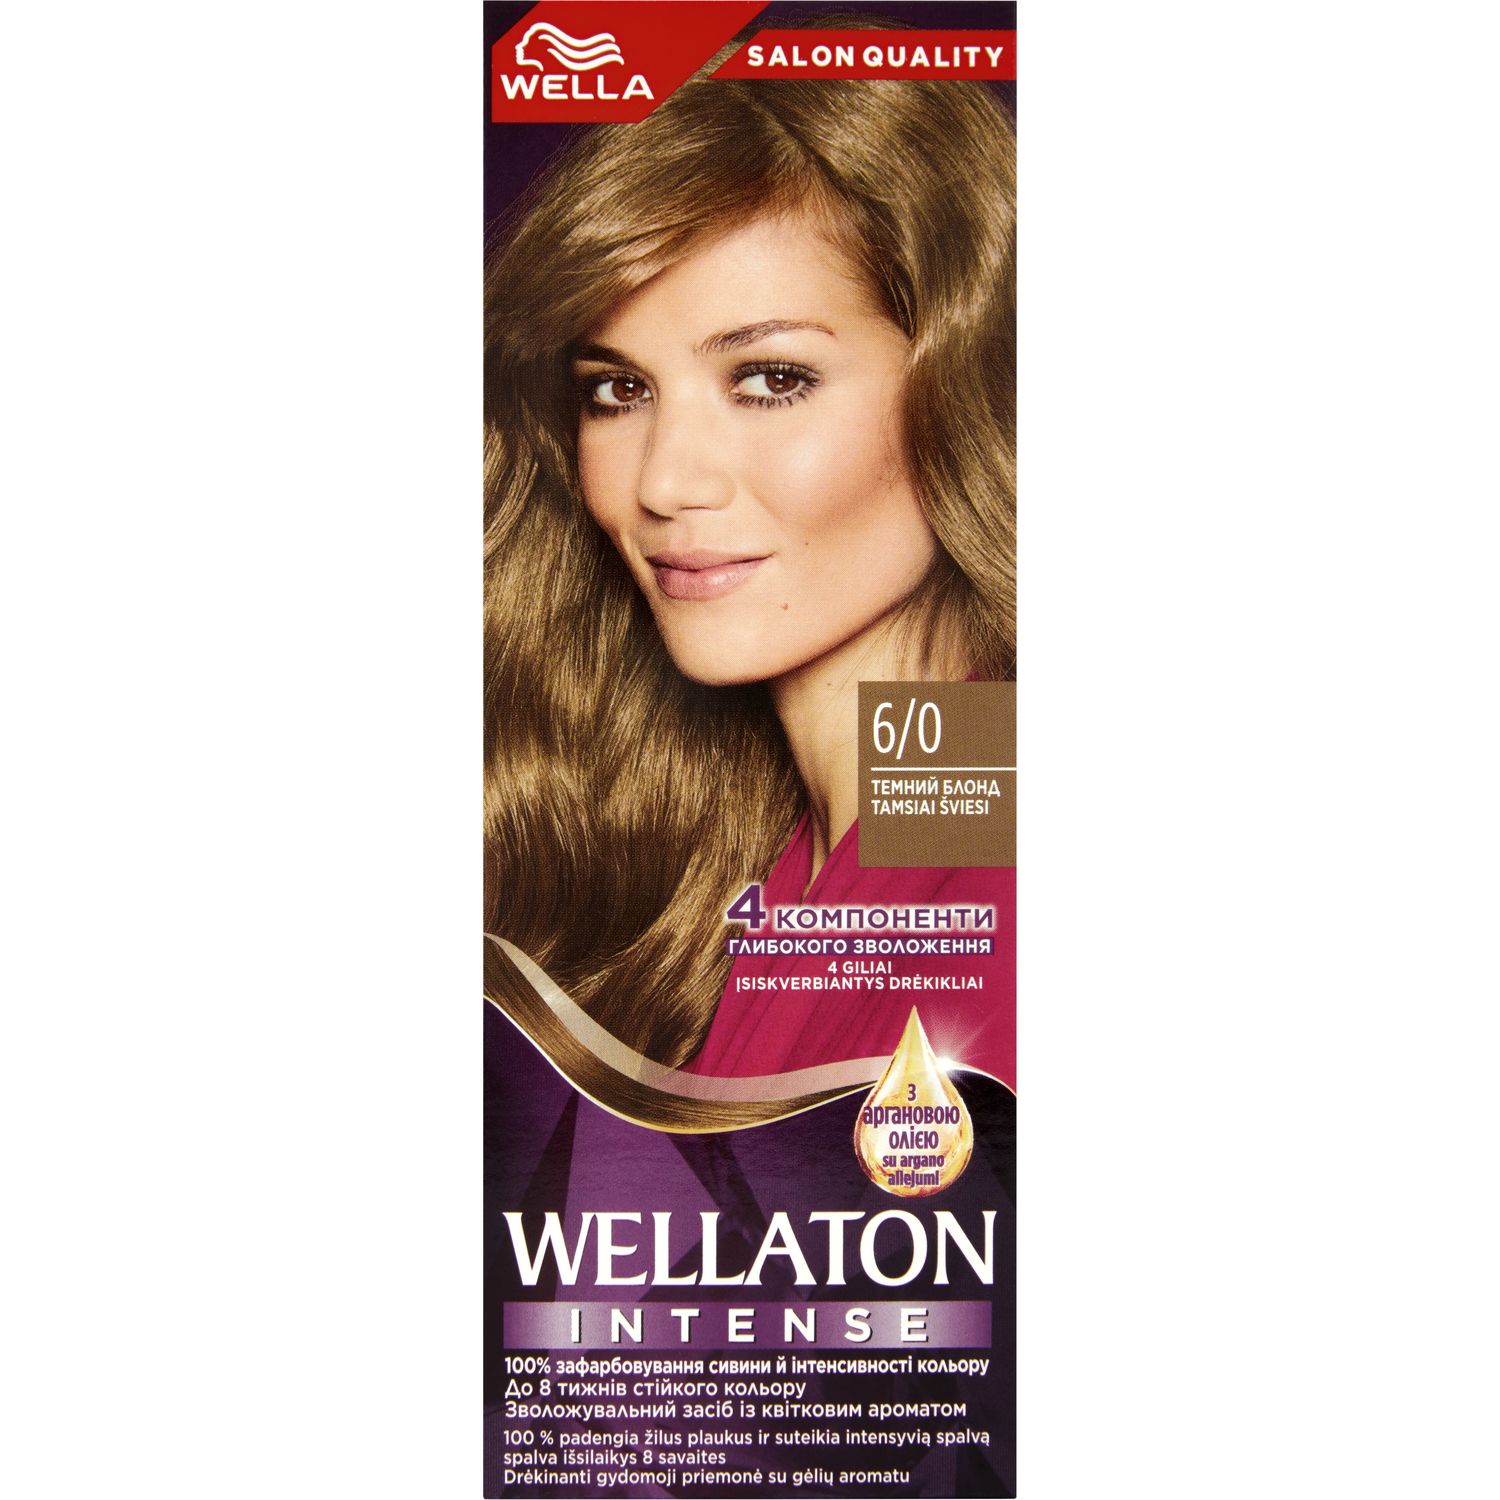 Интенсивная крем-краска для волос Wellaton, оттенок 6/0 (Темный блонд), 110 мл - фото 1